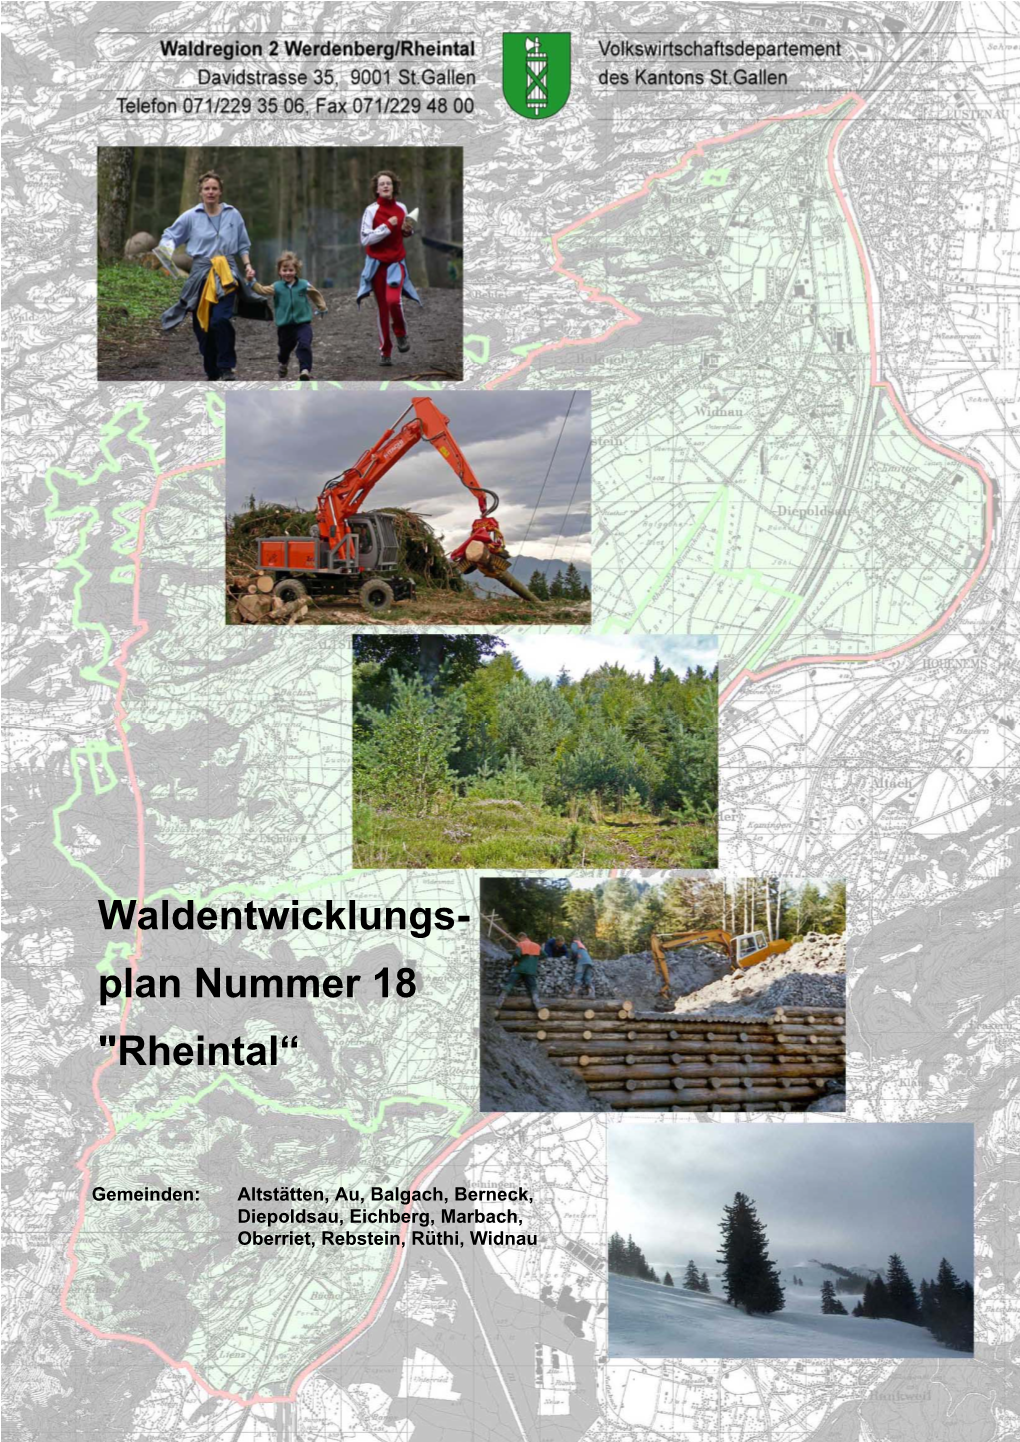 Waldentwicklungs- Plan Nummer 18 "Rheintal“